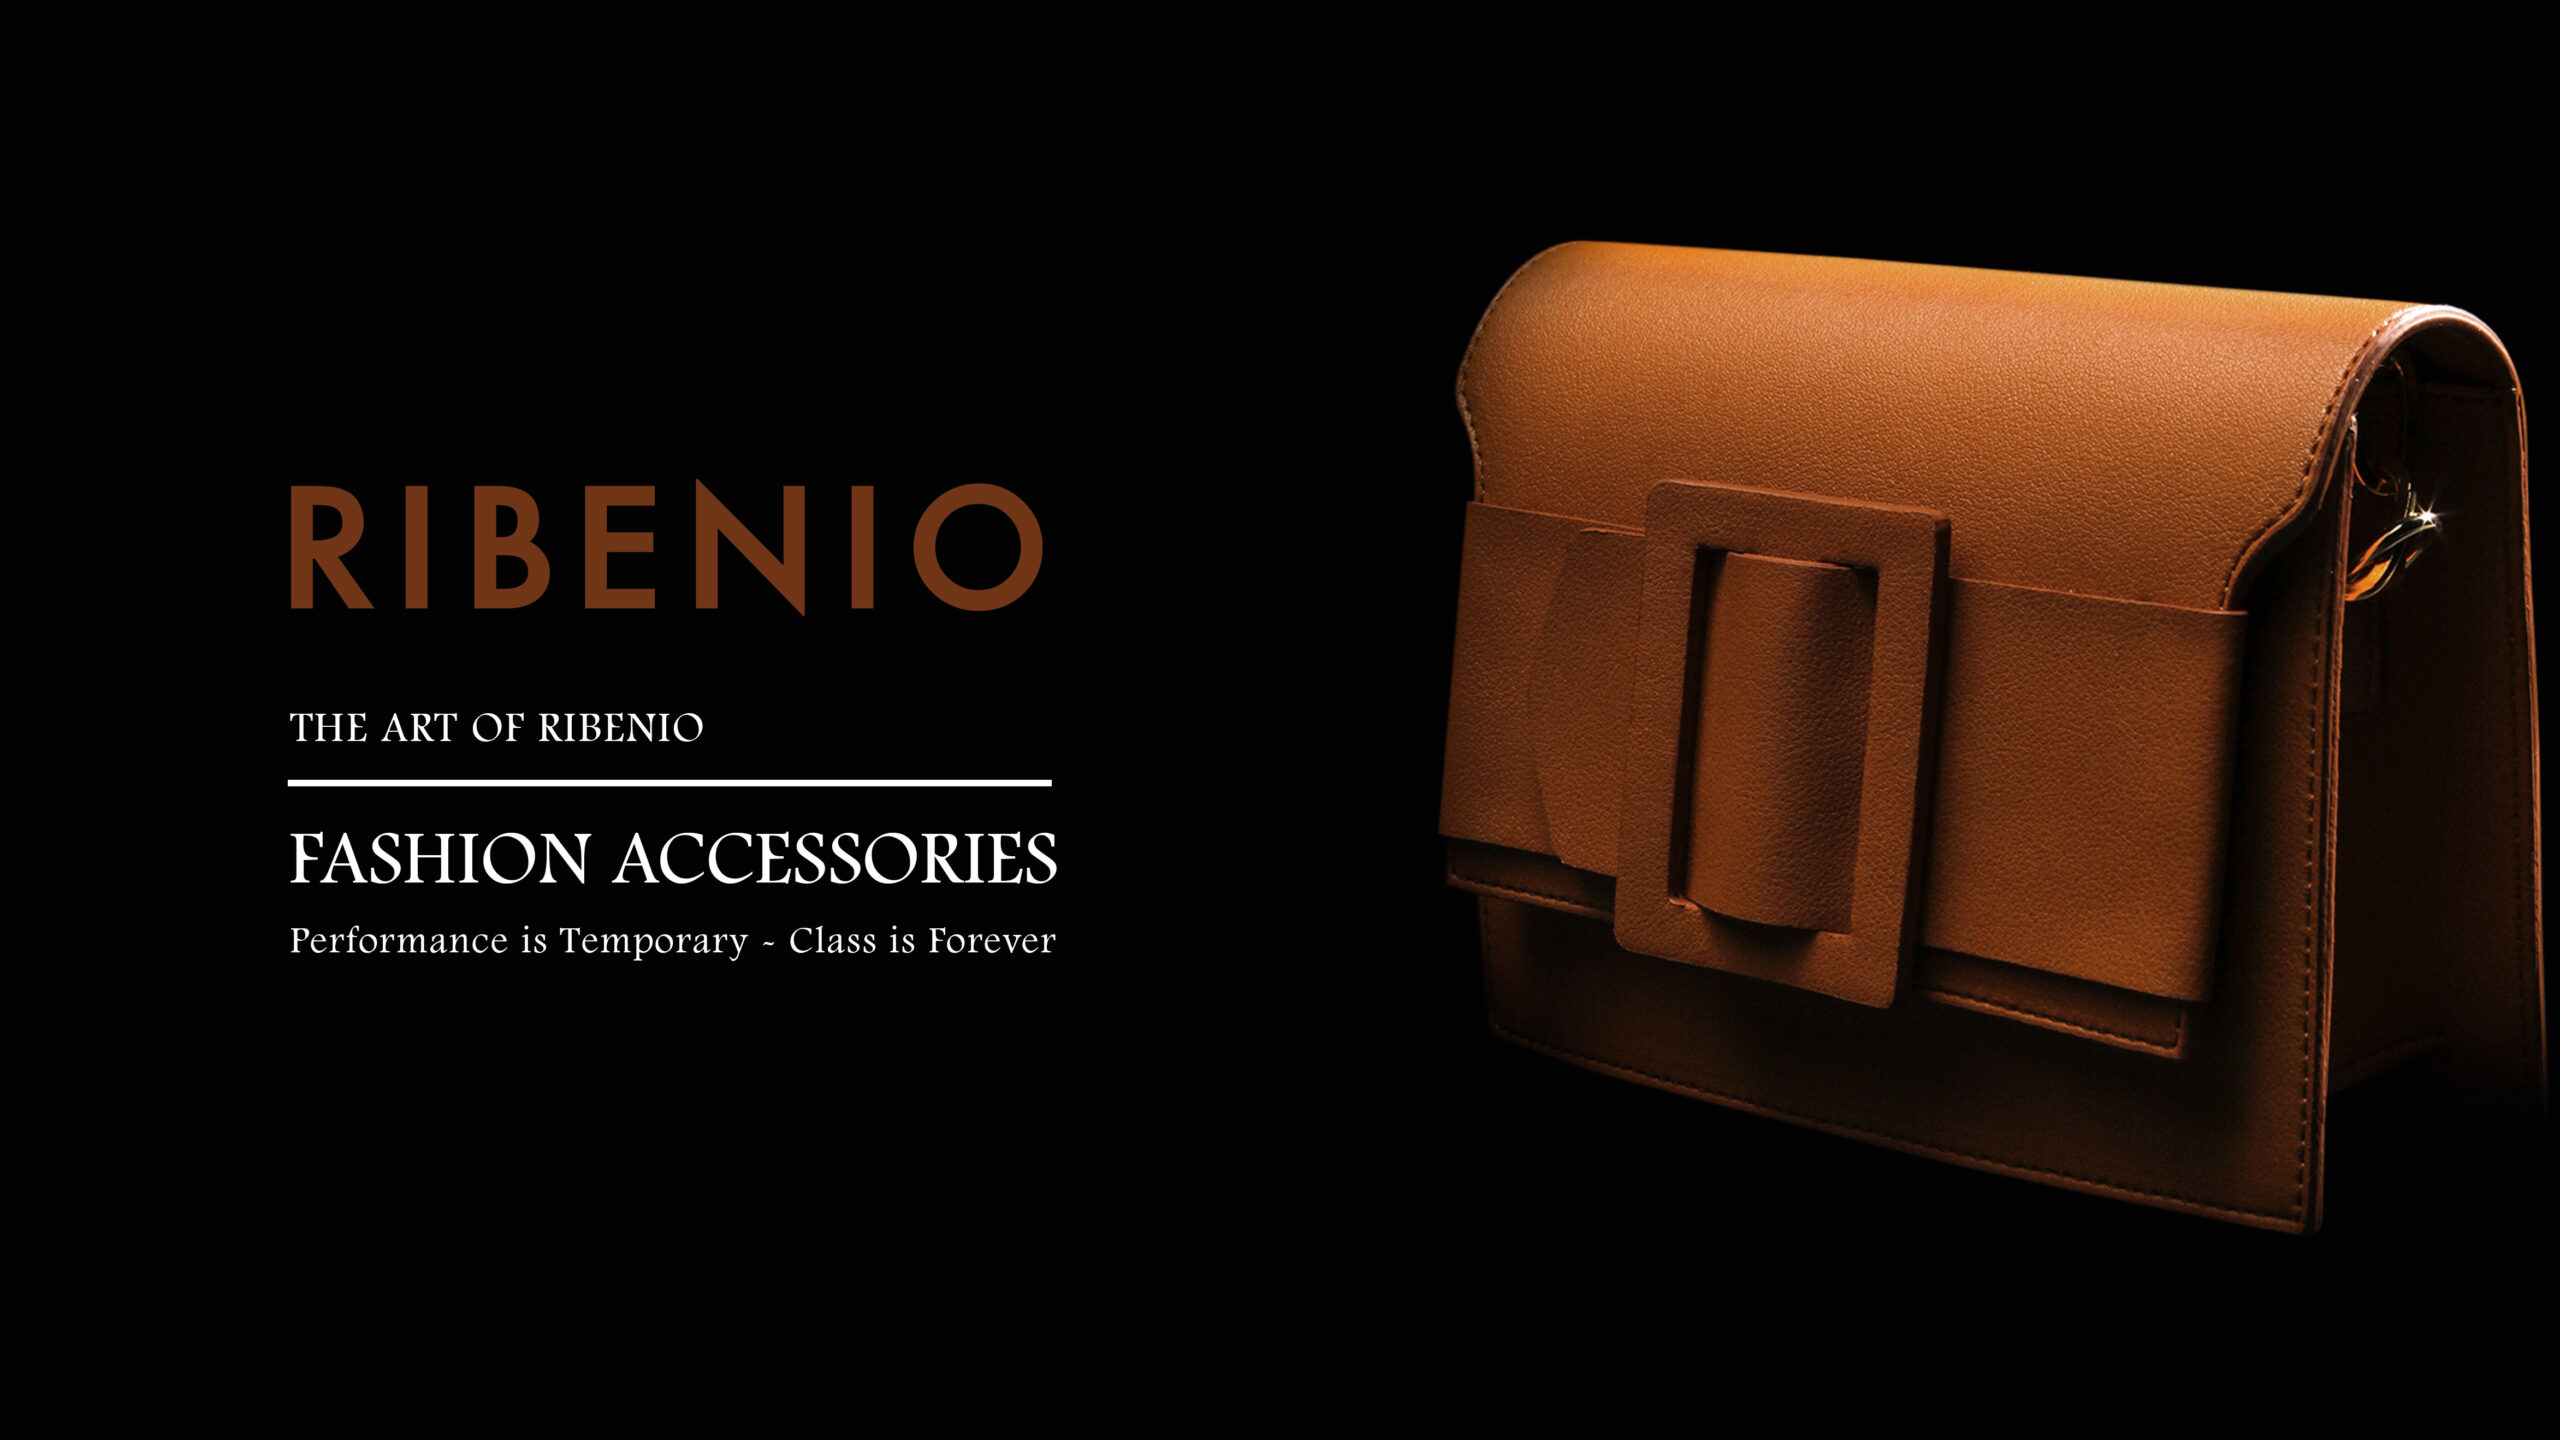 Genuine Leather Accessories for Men and Women - Ribenio